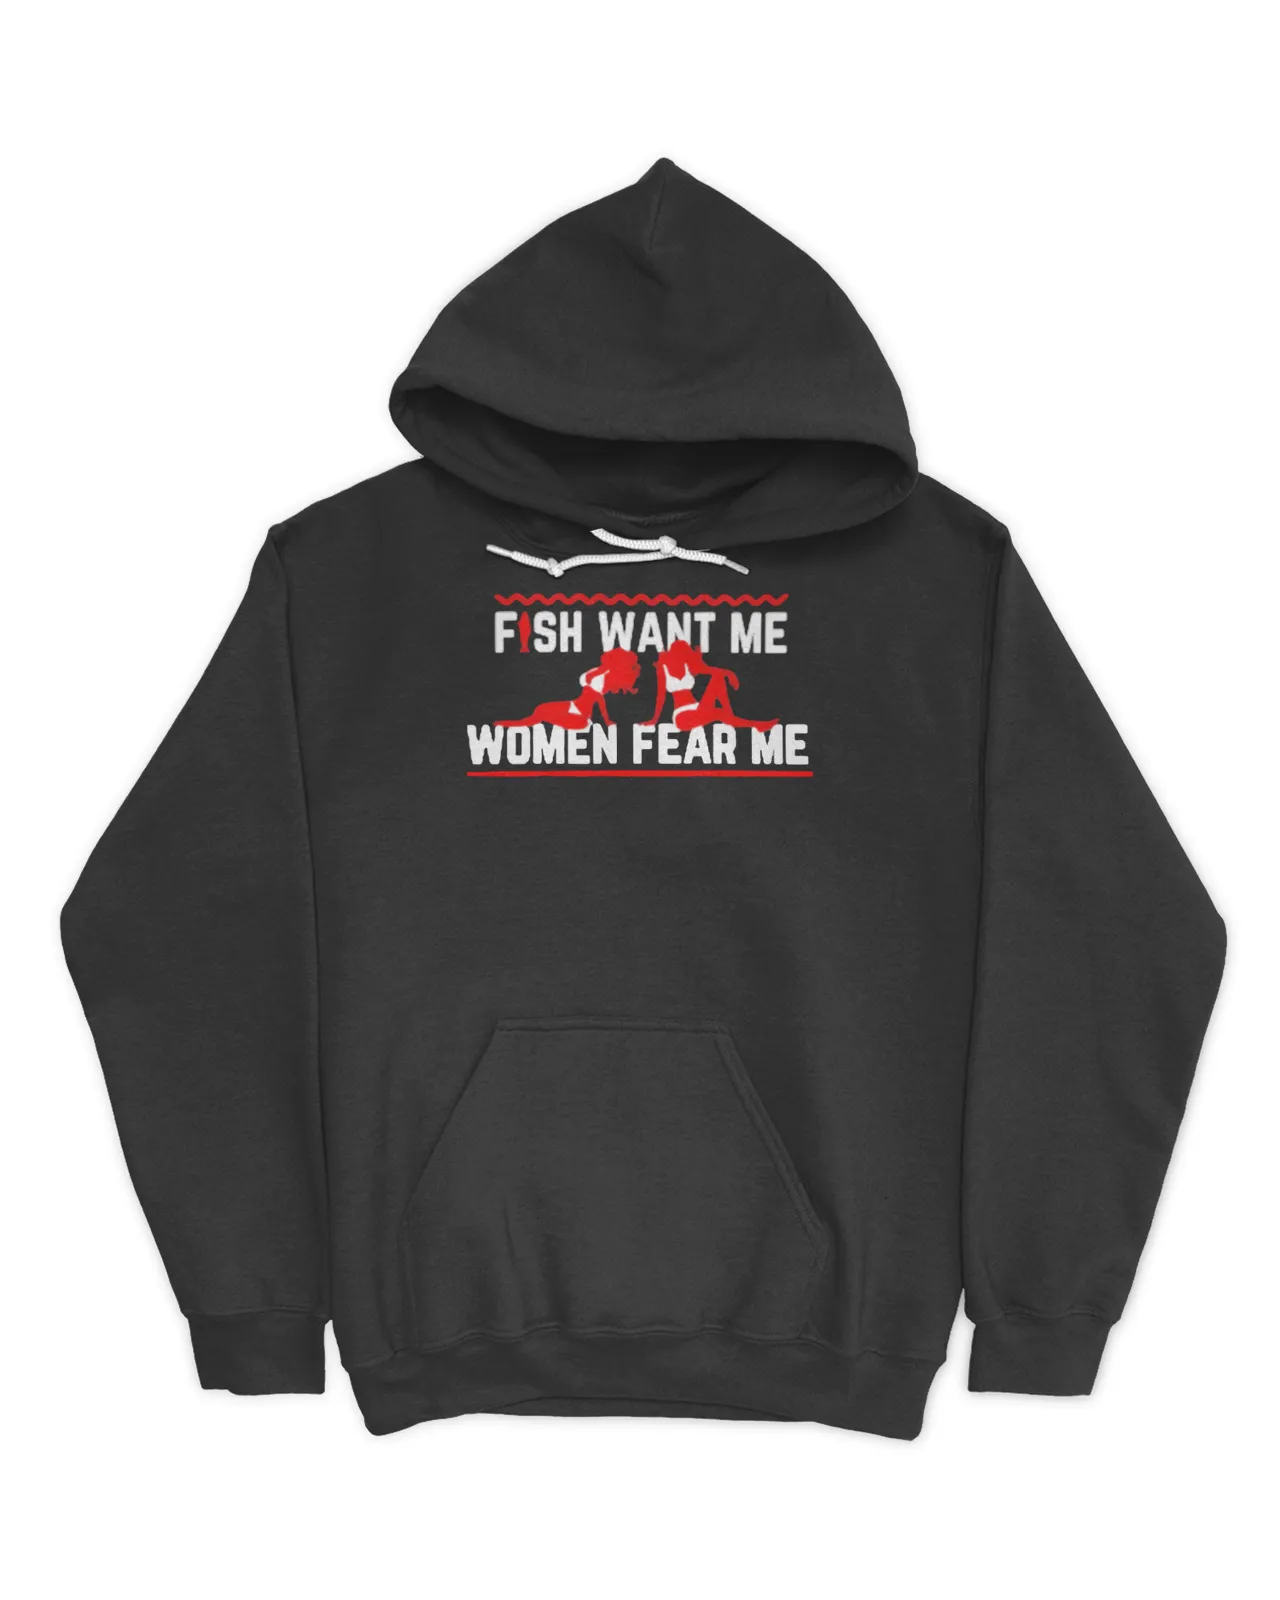 Fish Want Me Women Fear Me Shirt